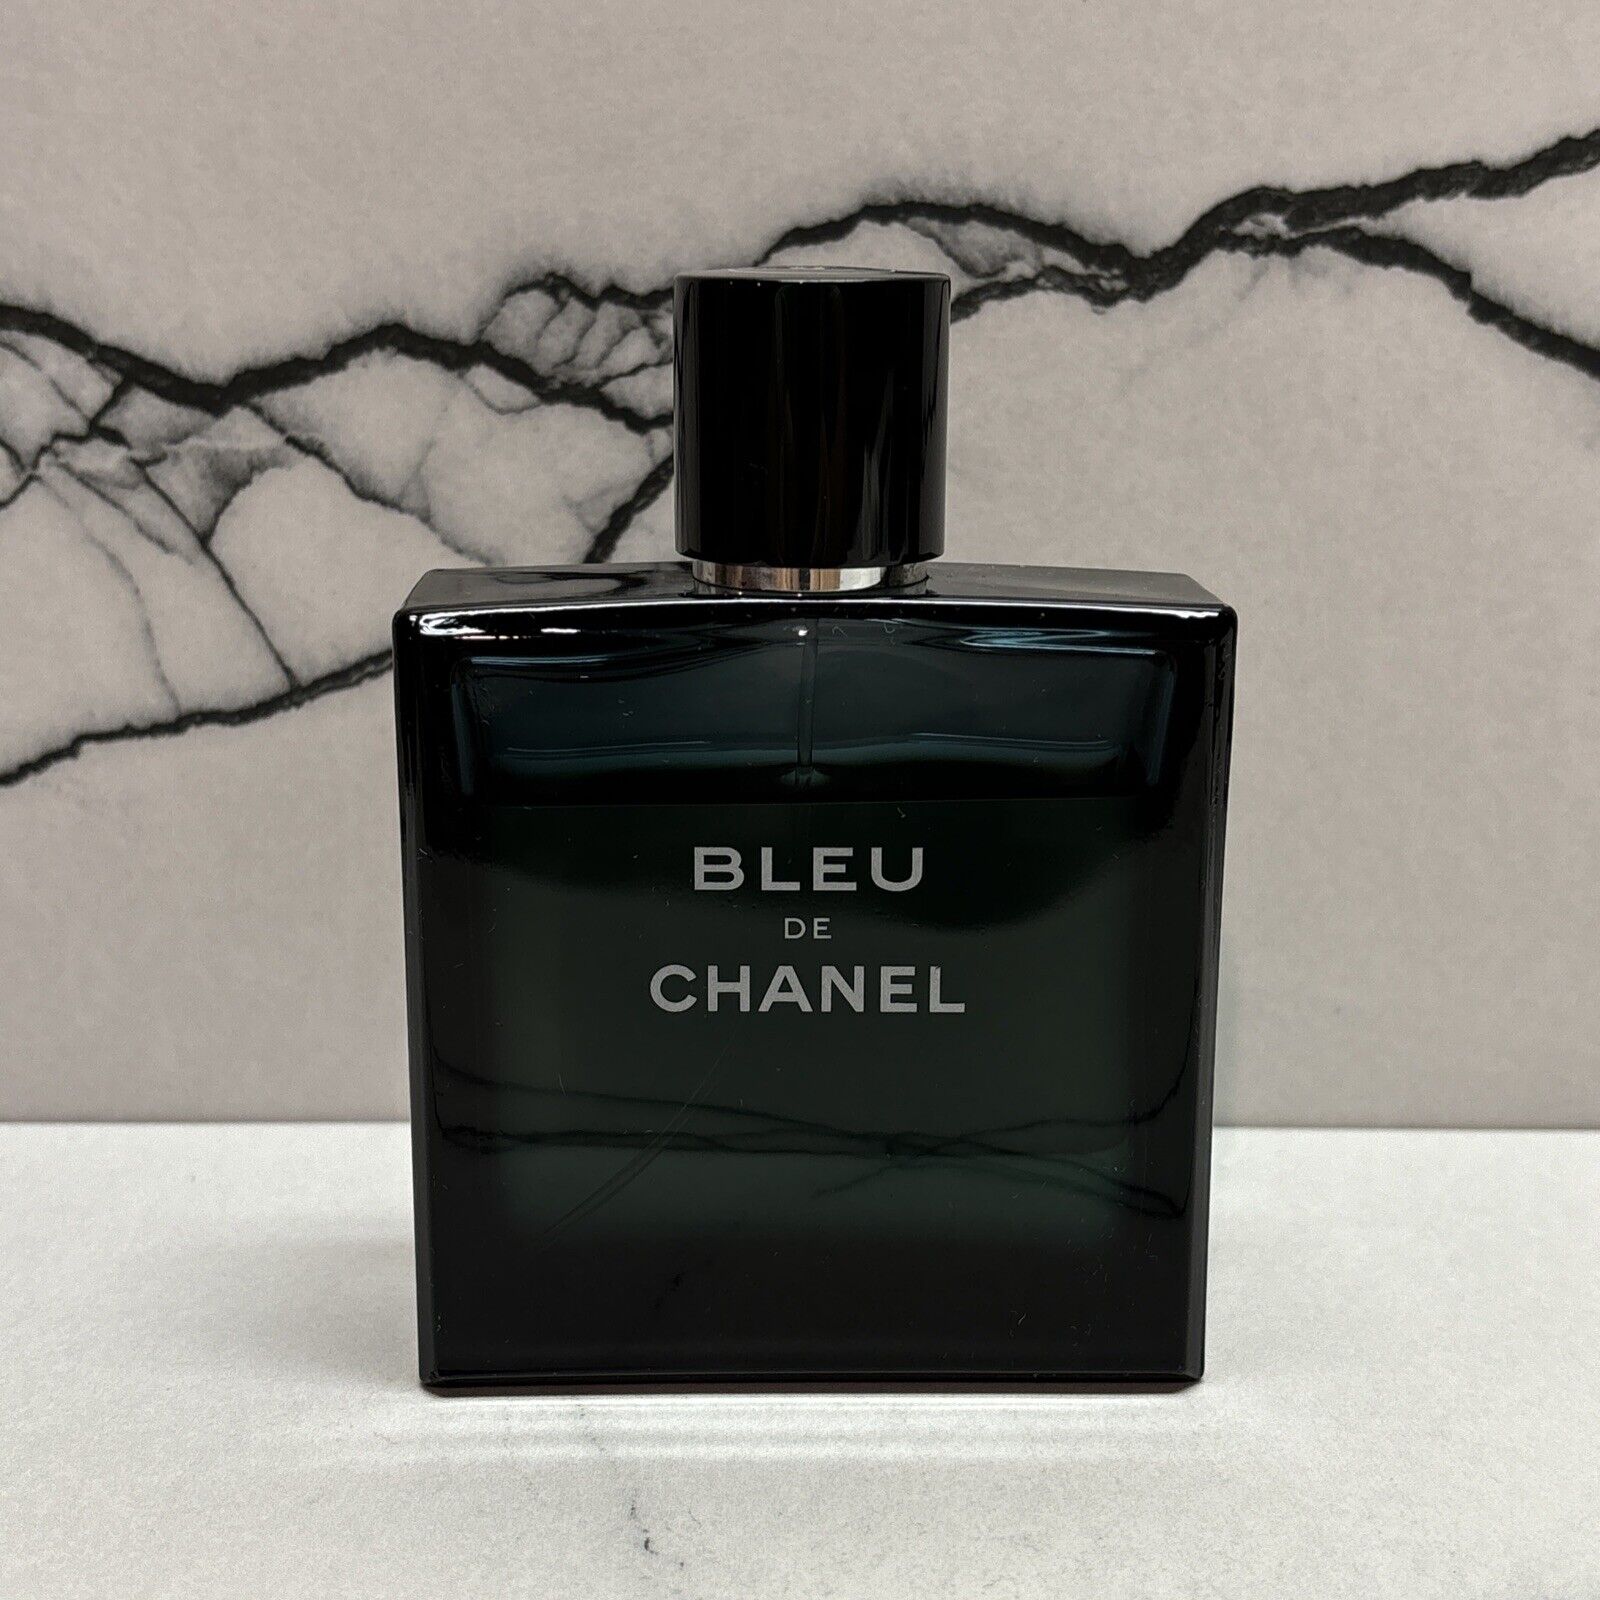 Chanel “Blue De Chanel” Eau De Toilette (Cologne) Spray For Men 3.4 fl oz